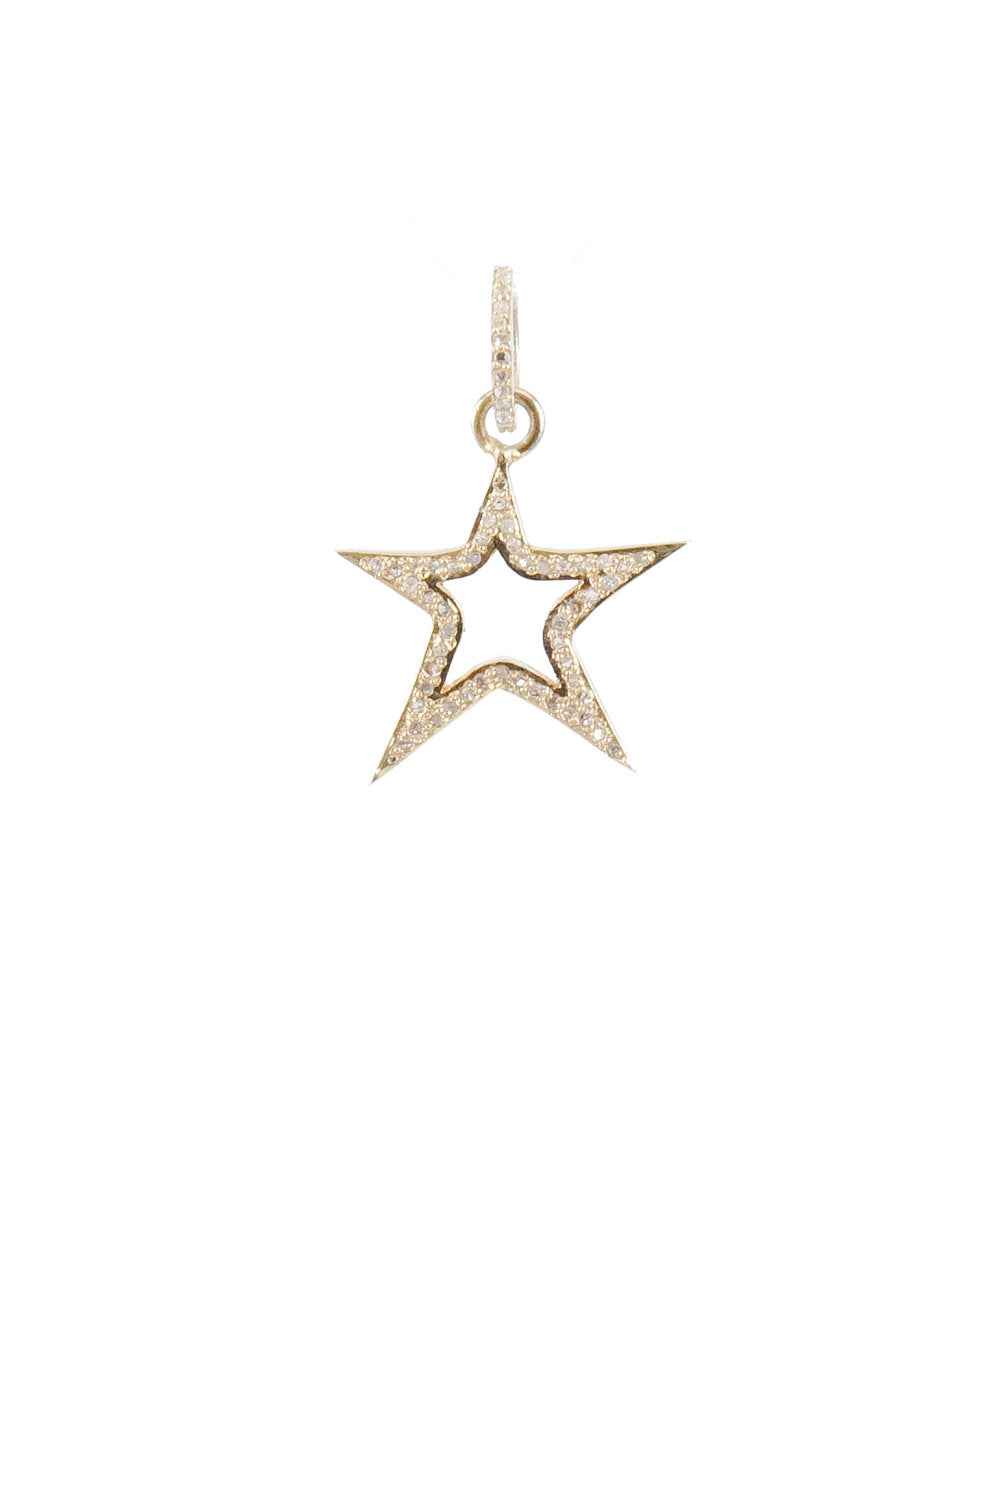 Harvest Jewels Cutout Star